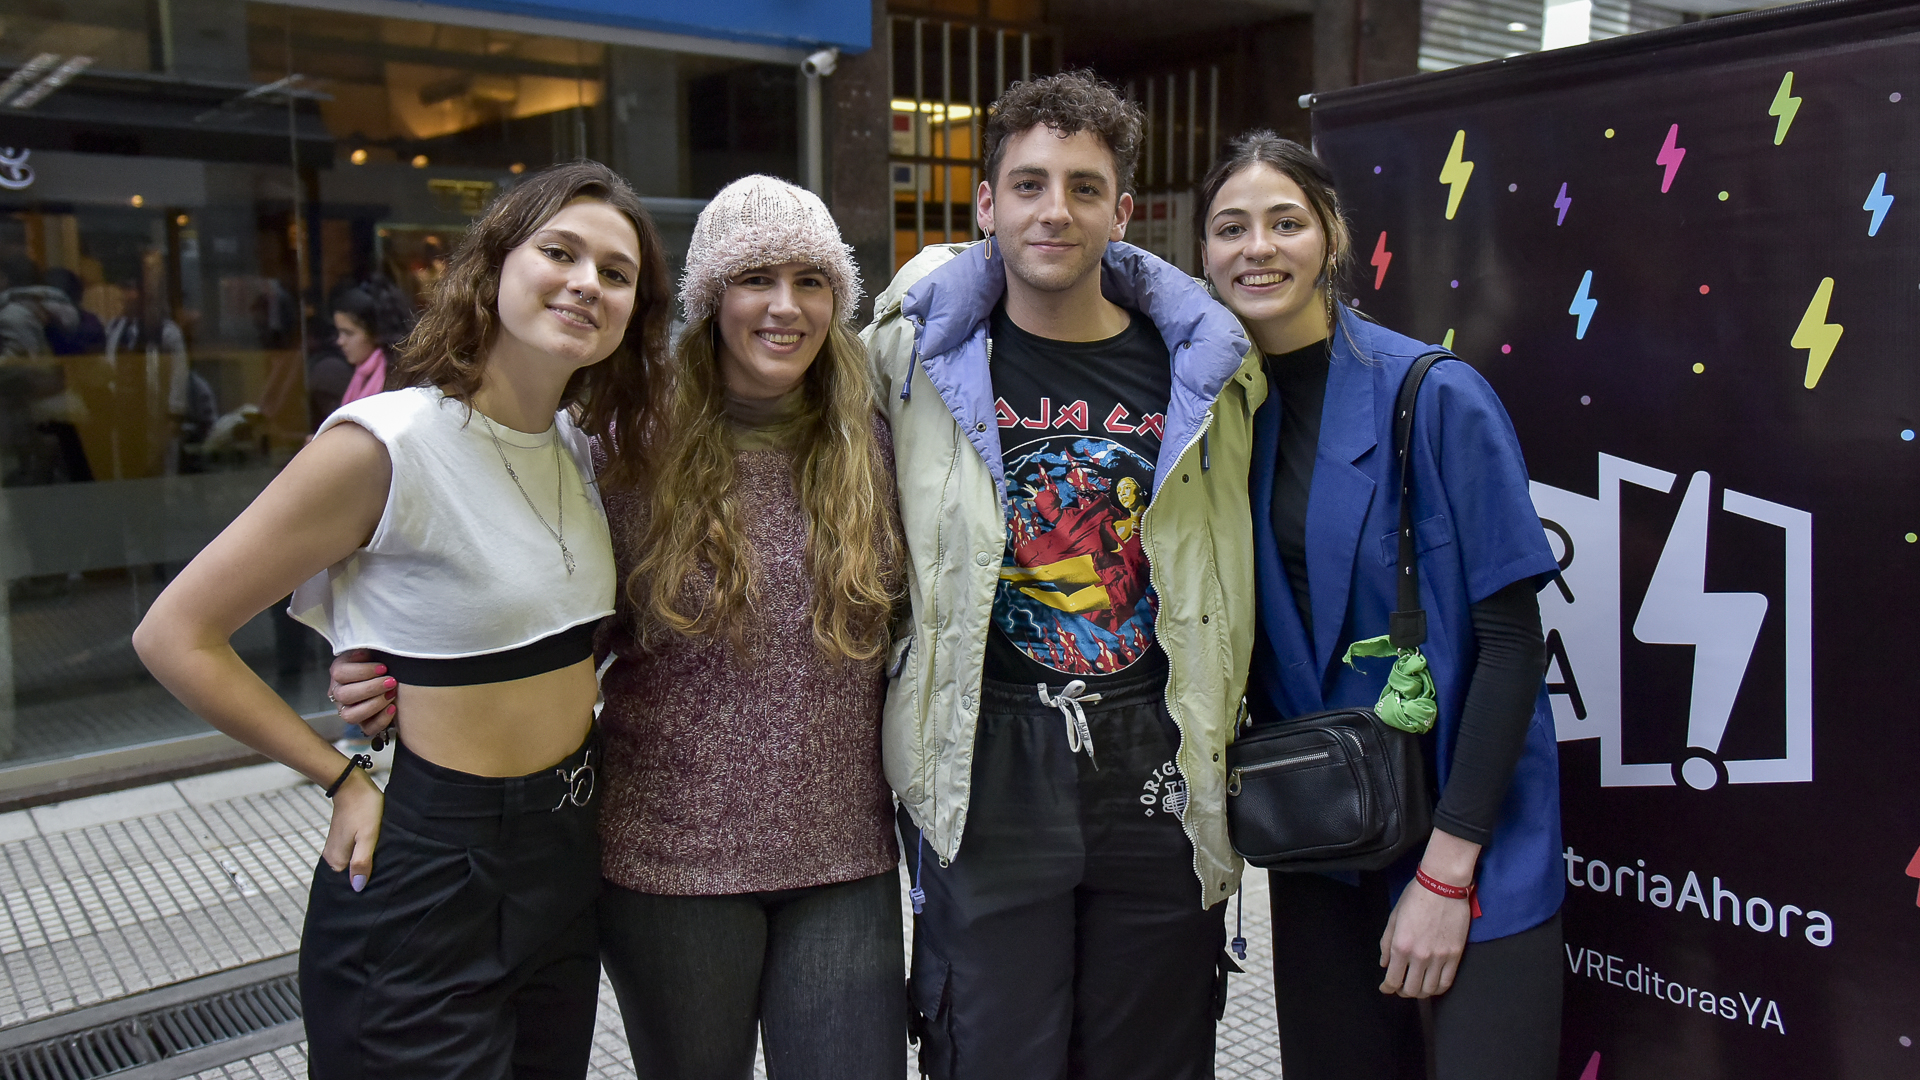 Victoria Resco, Anna K. Franco, Maximiliano Pizzicotti y Almendra Veiga, jóvenes autores y boofluencers (foto por Gustavo Gavotti).